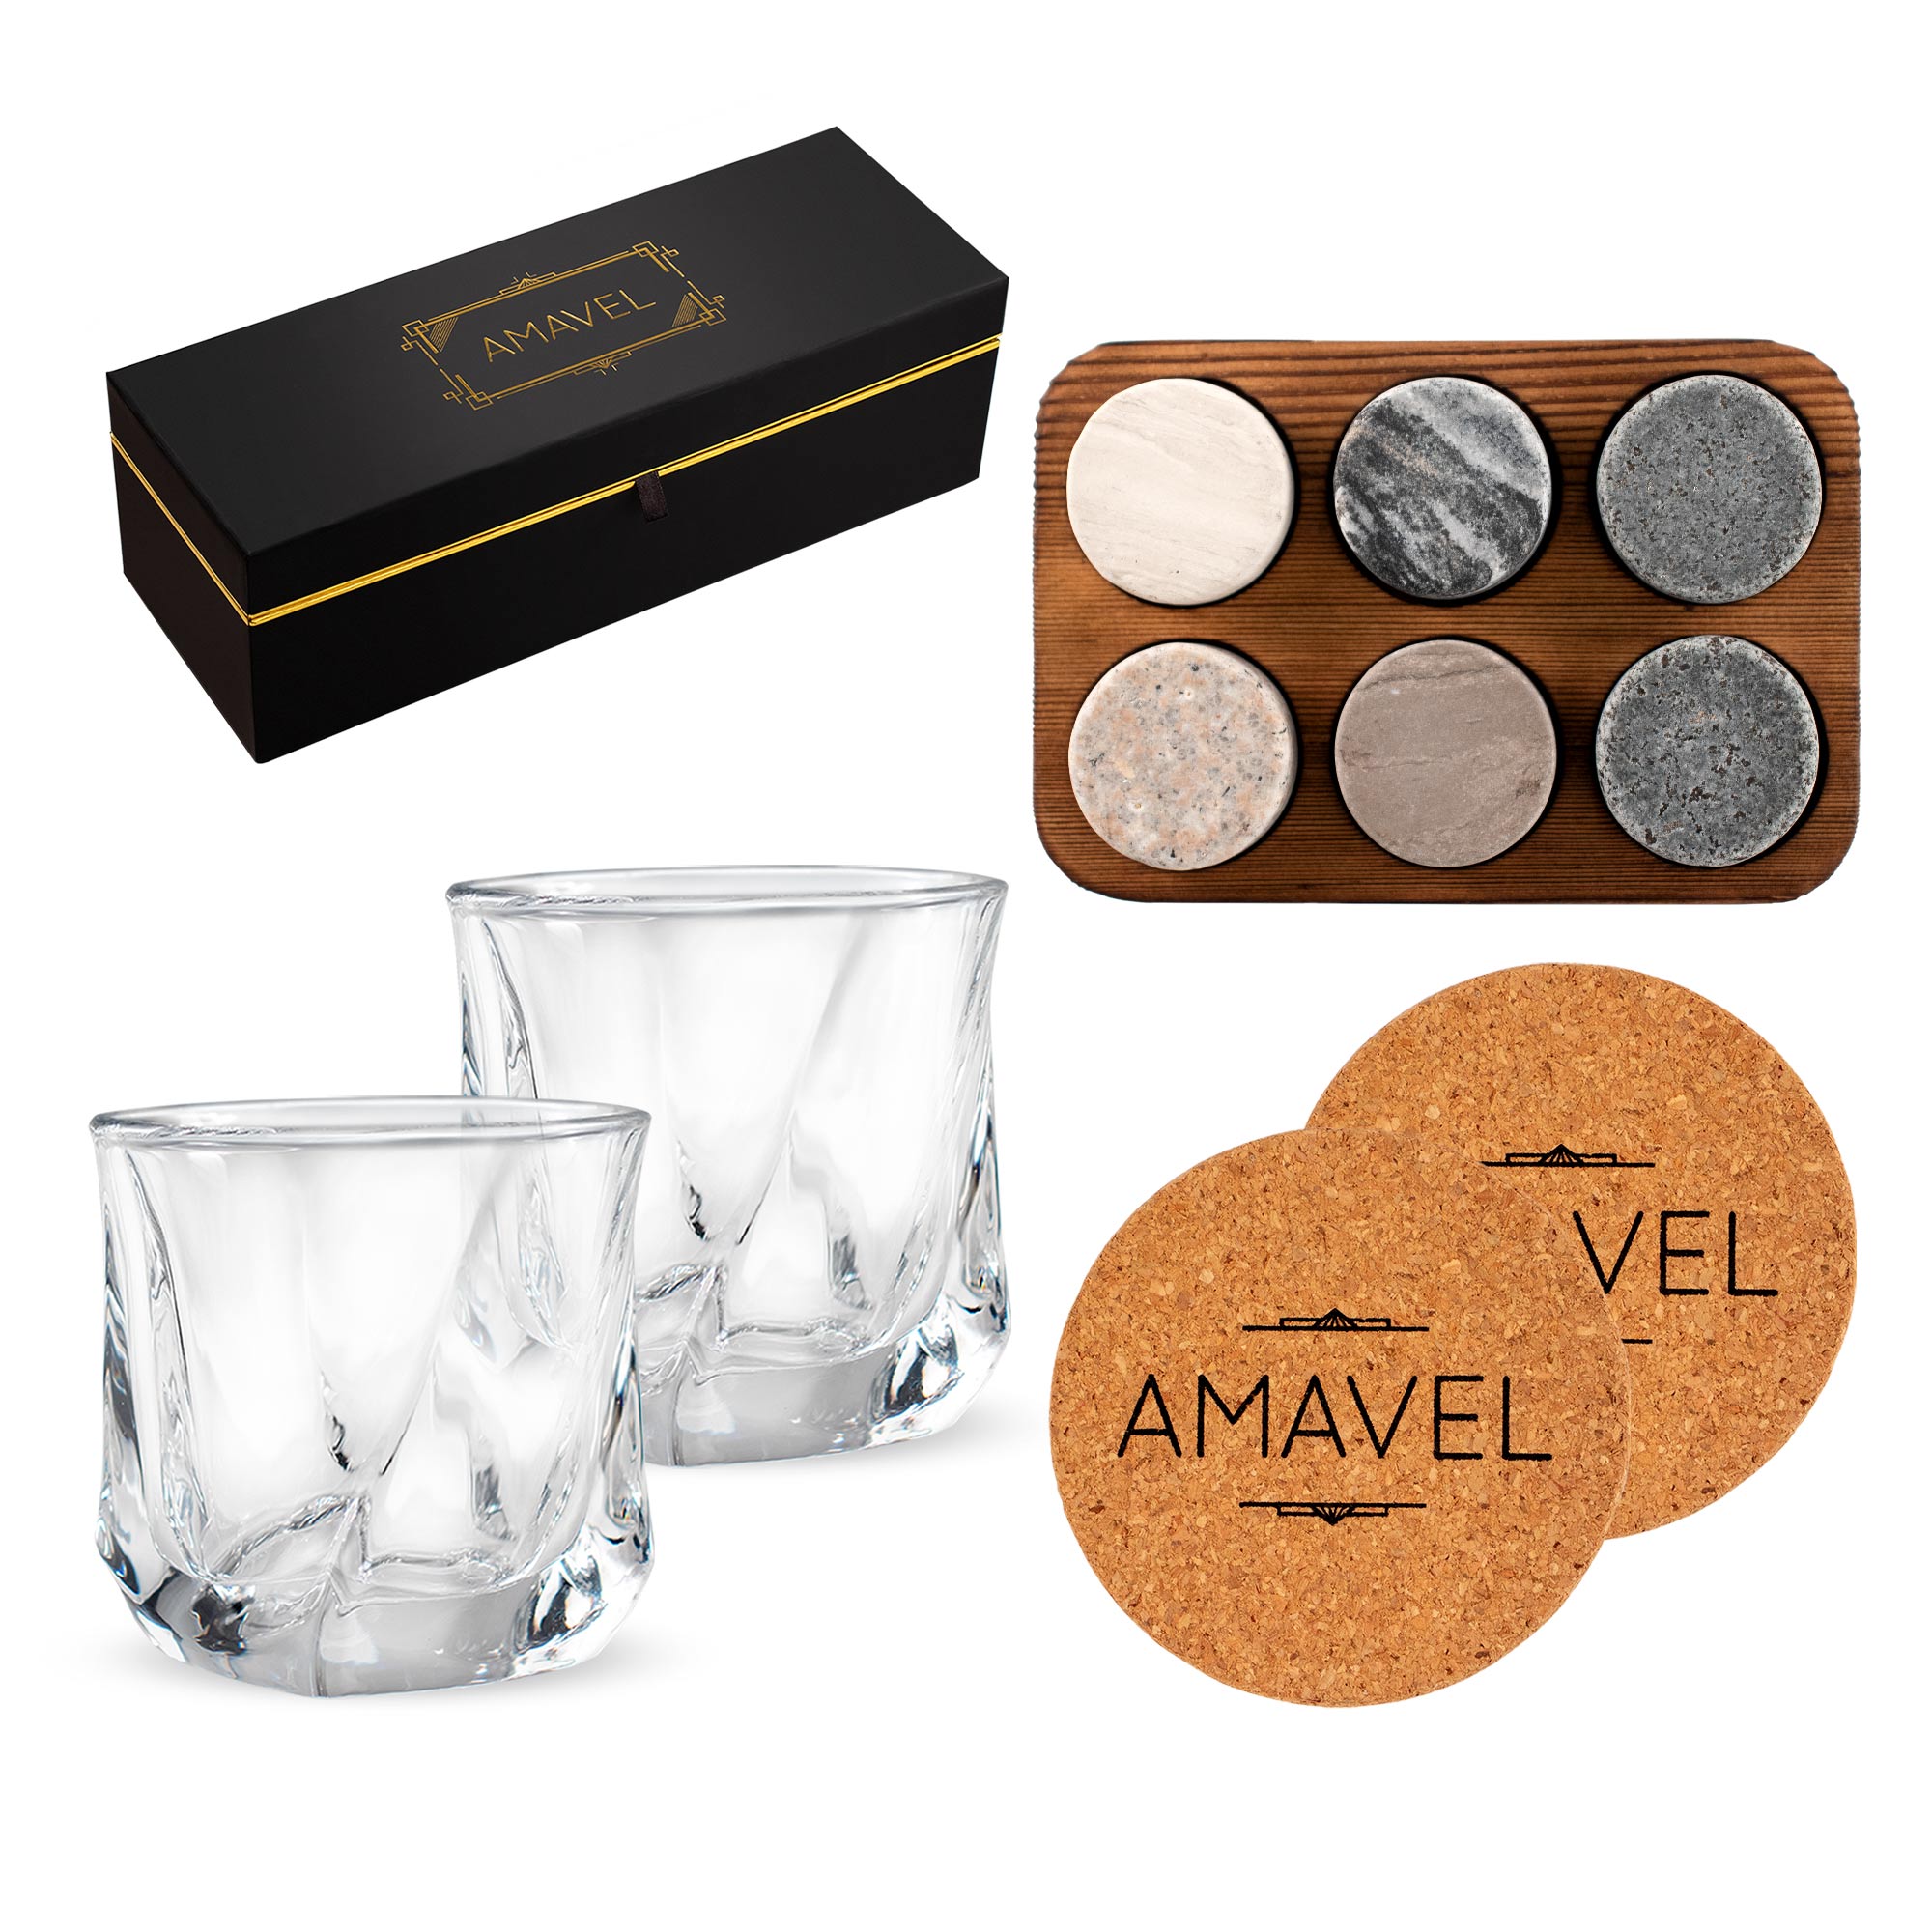 Elegantes Whisky Tasting Set in schwarzer Geschenkbox verzaubert selbst die anspruchsvollsten Whiskygenießer - ideal zum Verschenken!